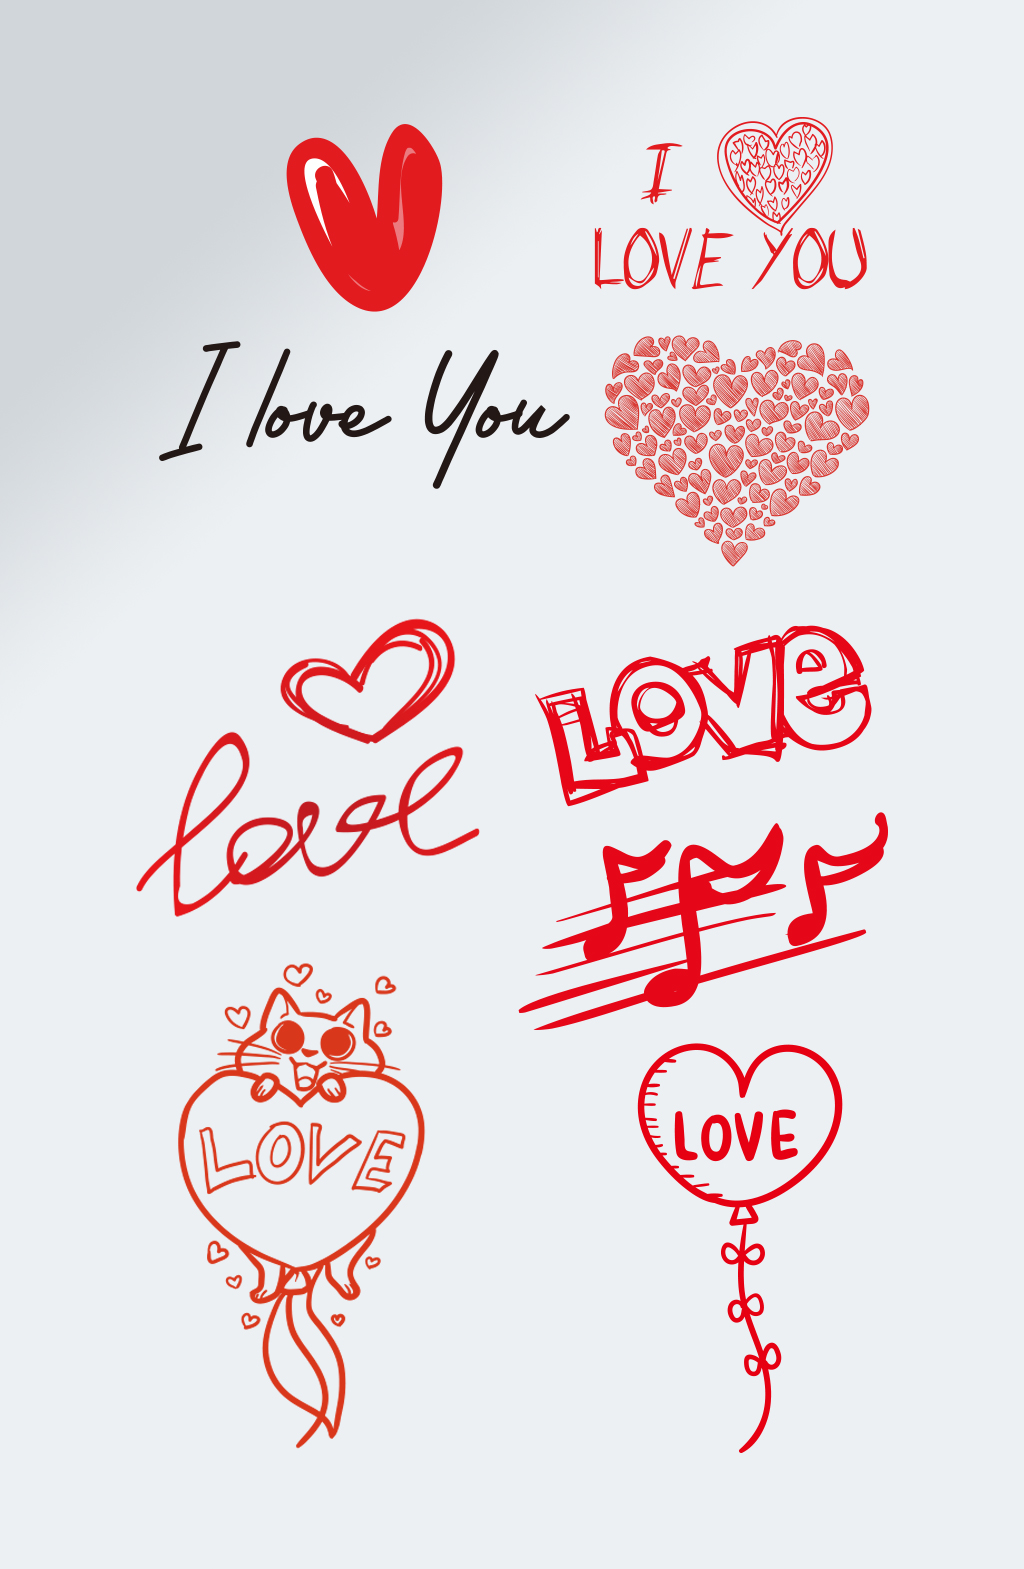 love花式字体复制图片